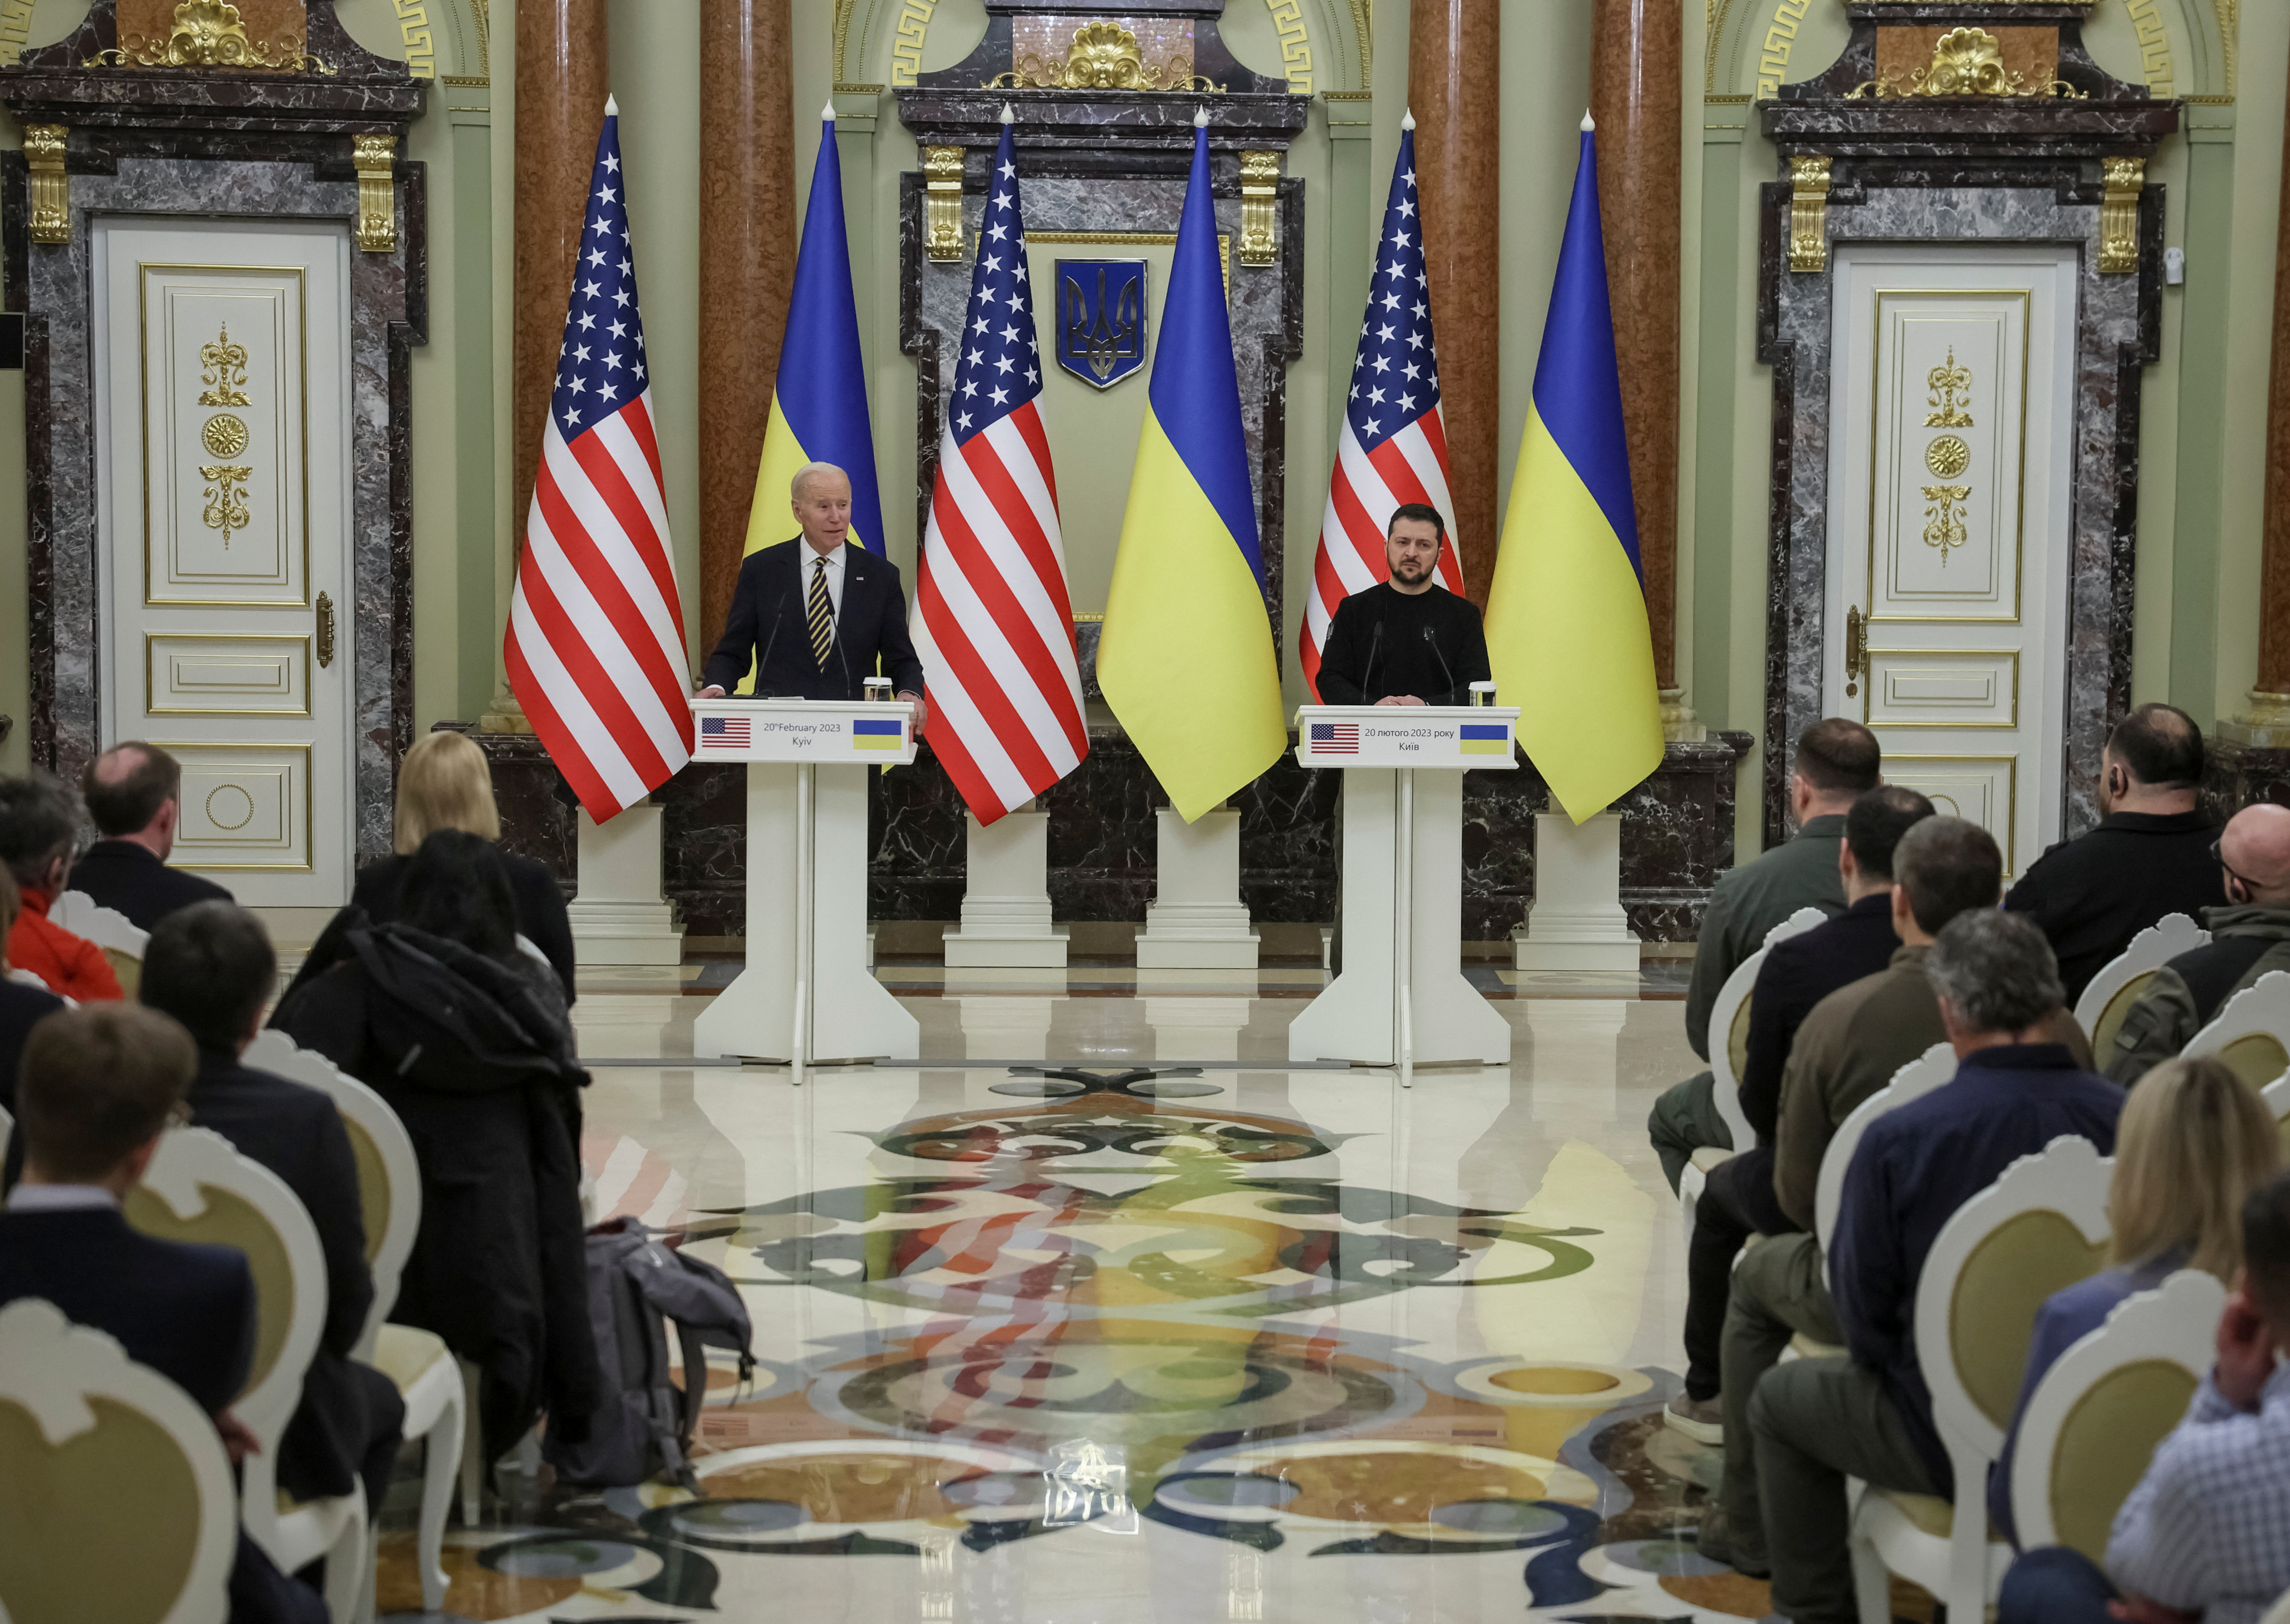 Biden prometió 500 millones de dólares en ayuda adicional, con un aumento de las entregas de armas a Ucrania, y prometió el “compromiso inquebrantable” de Washington en la defensa de la integridad territorial de Ucrania.